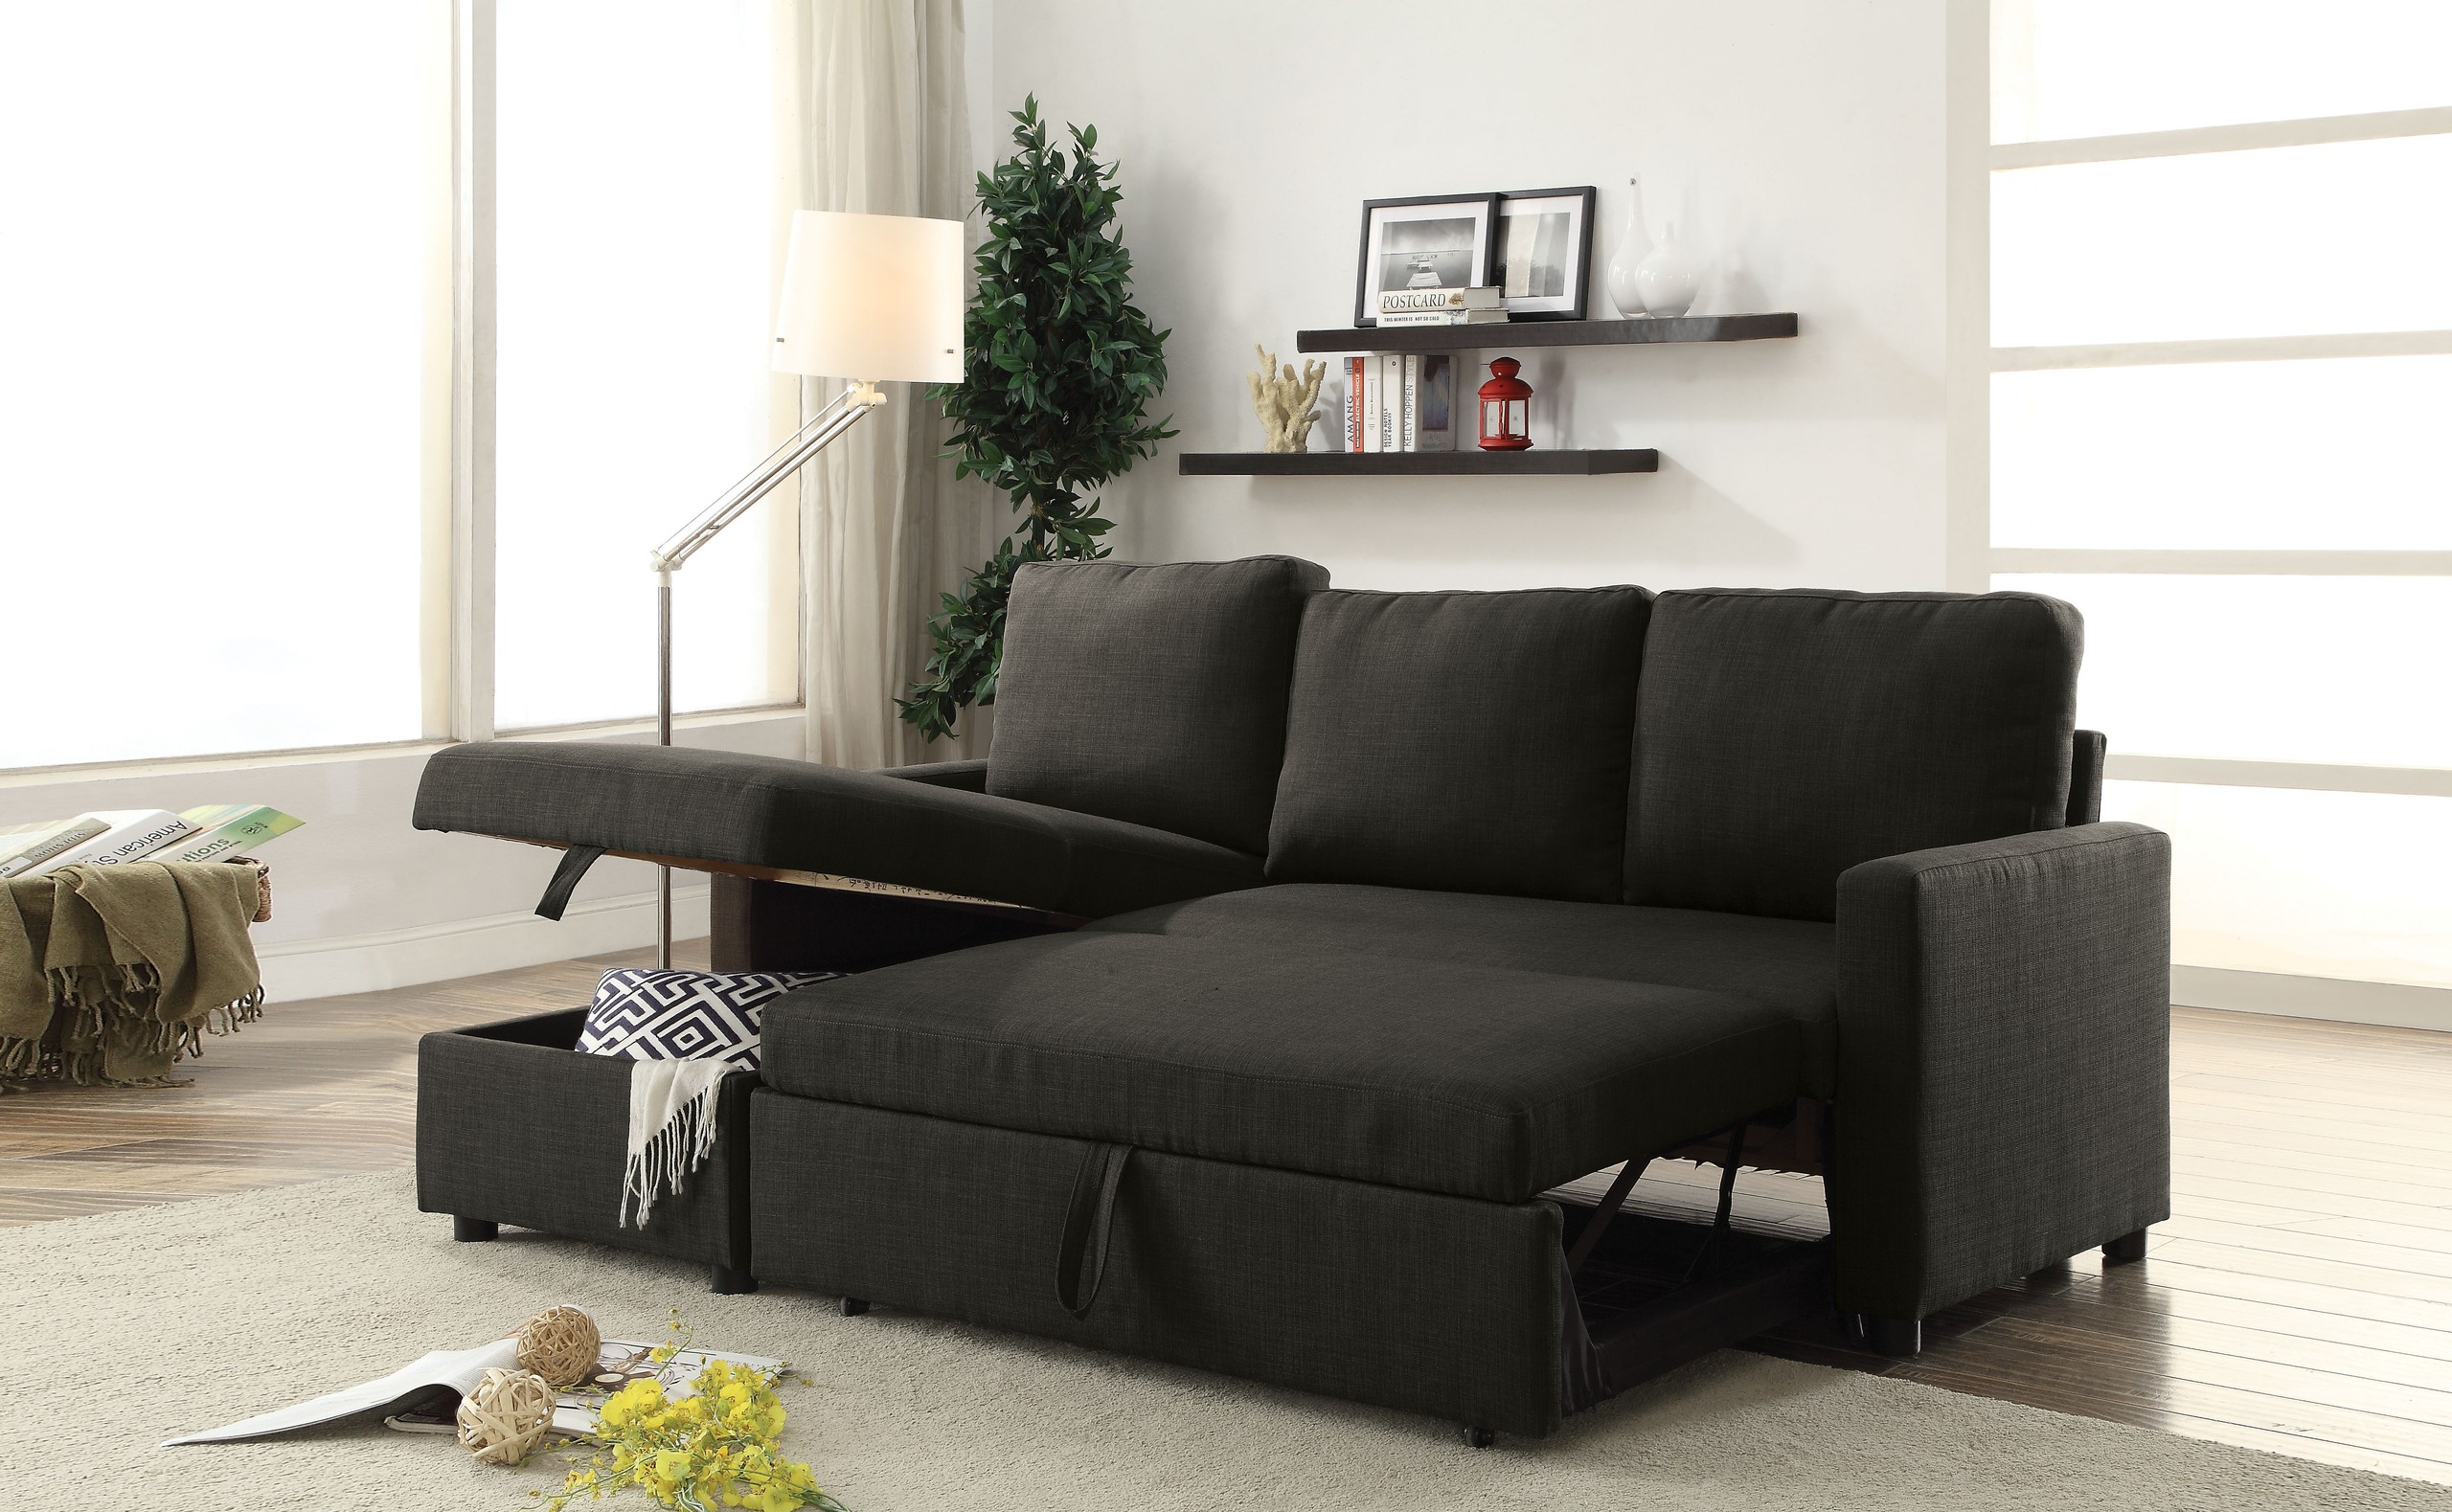 Contemporary sectional ottoman sofa